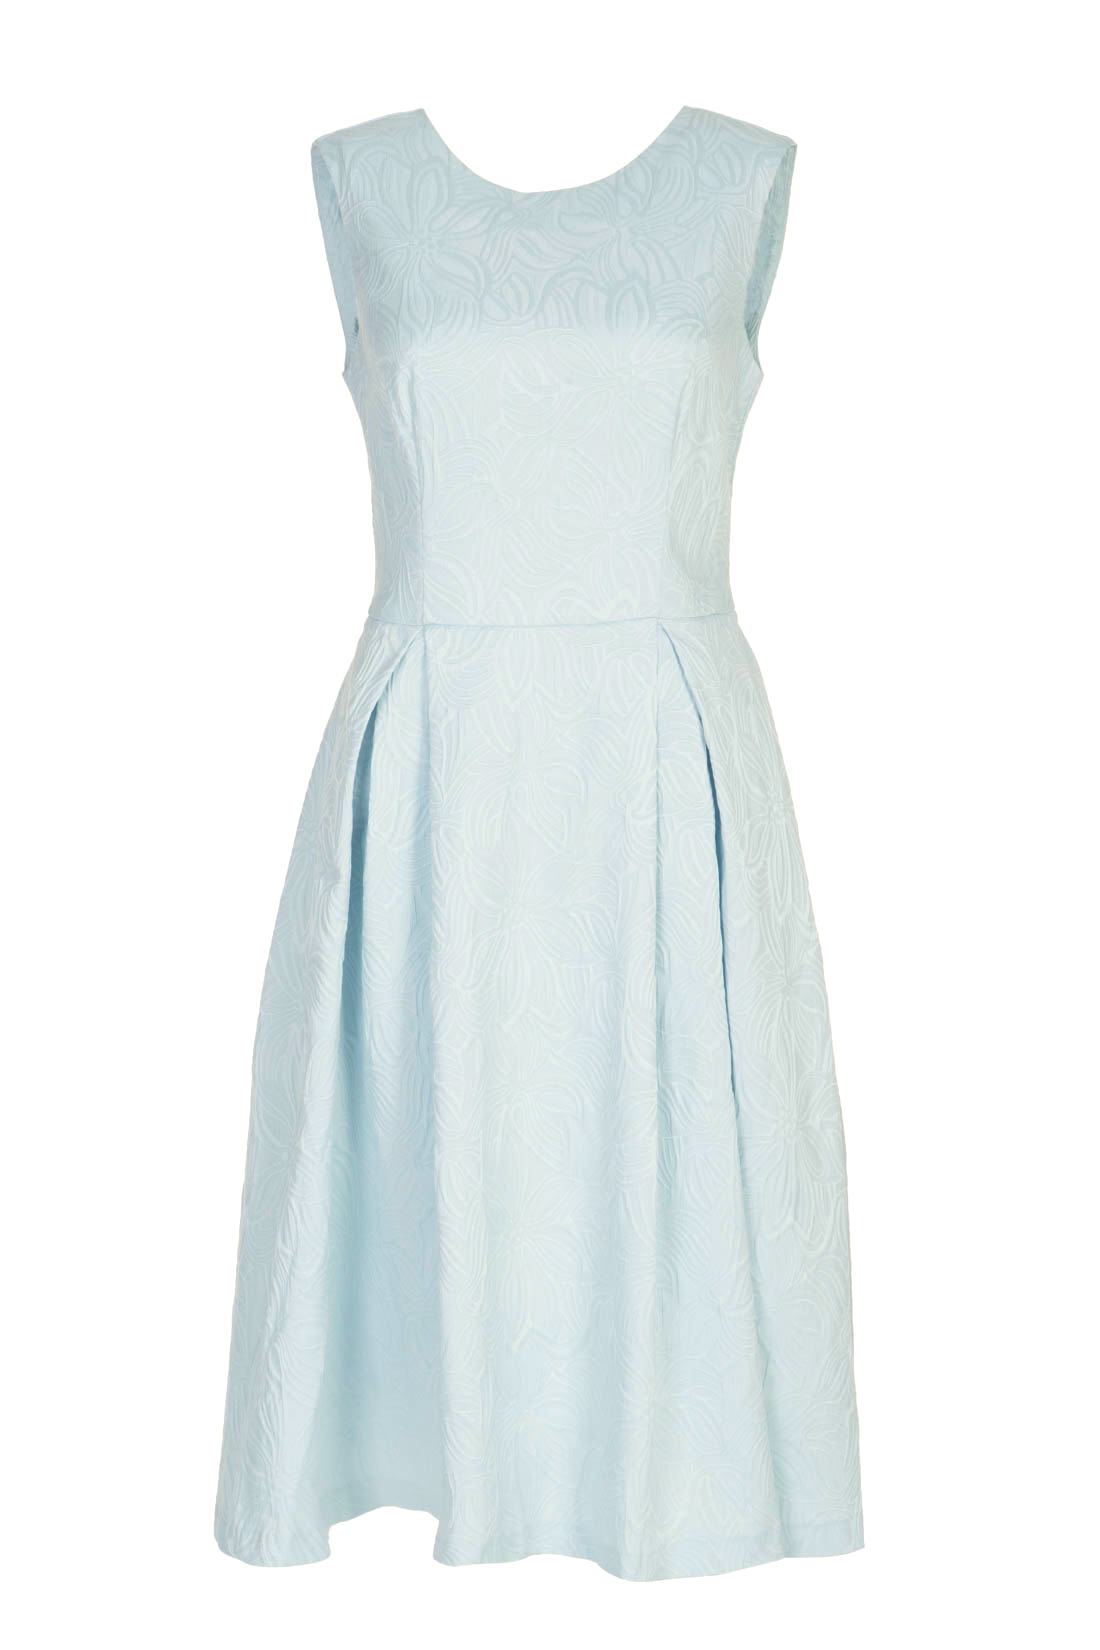 Платье из жаккардового материала (арт. baon B457063), размер XS, цвет белый Платье из жаккардового материала (арт. baon B457063) - фото 4